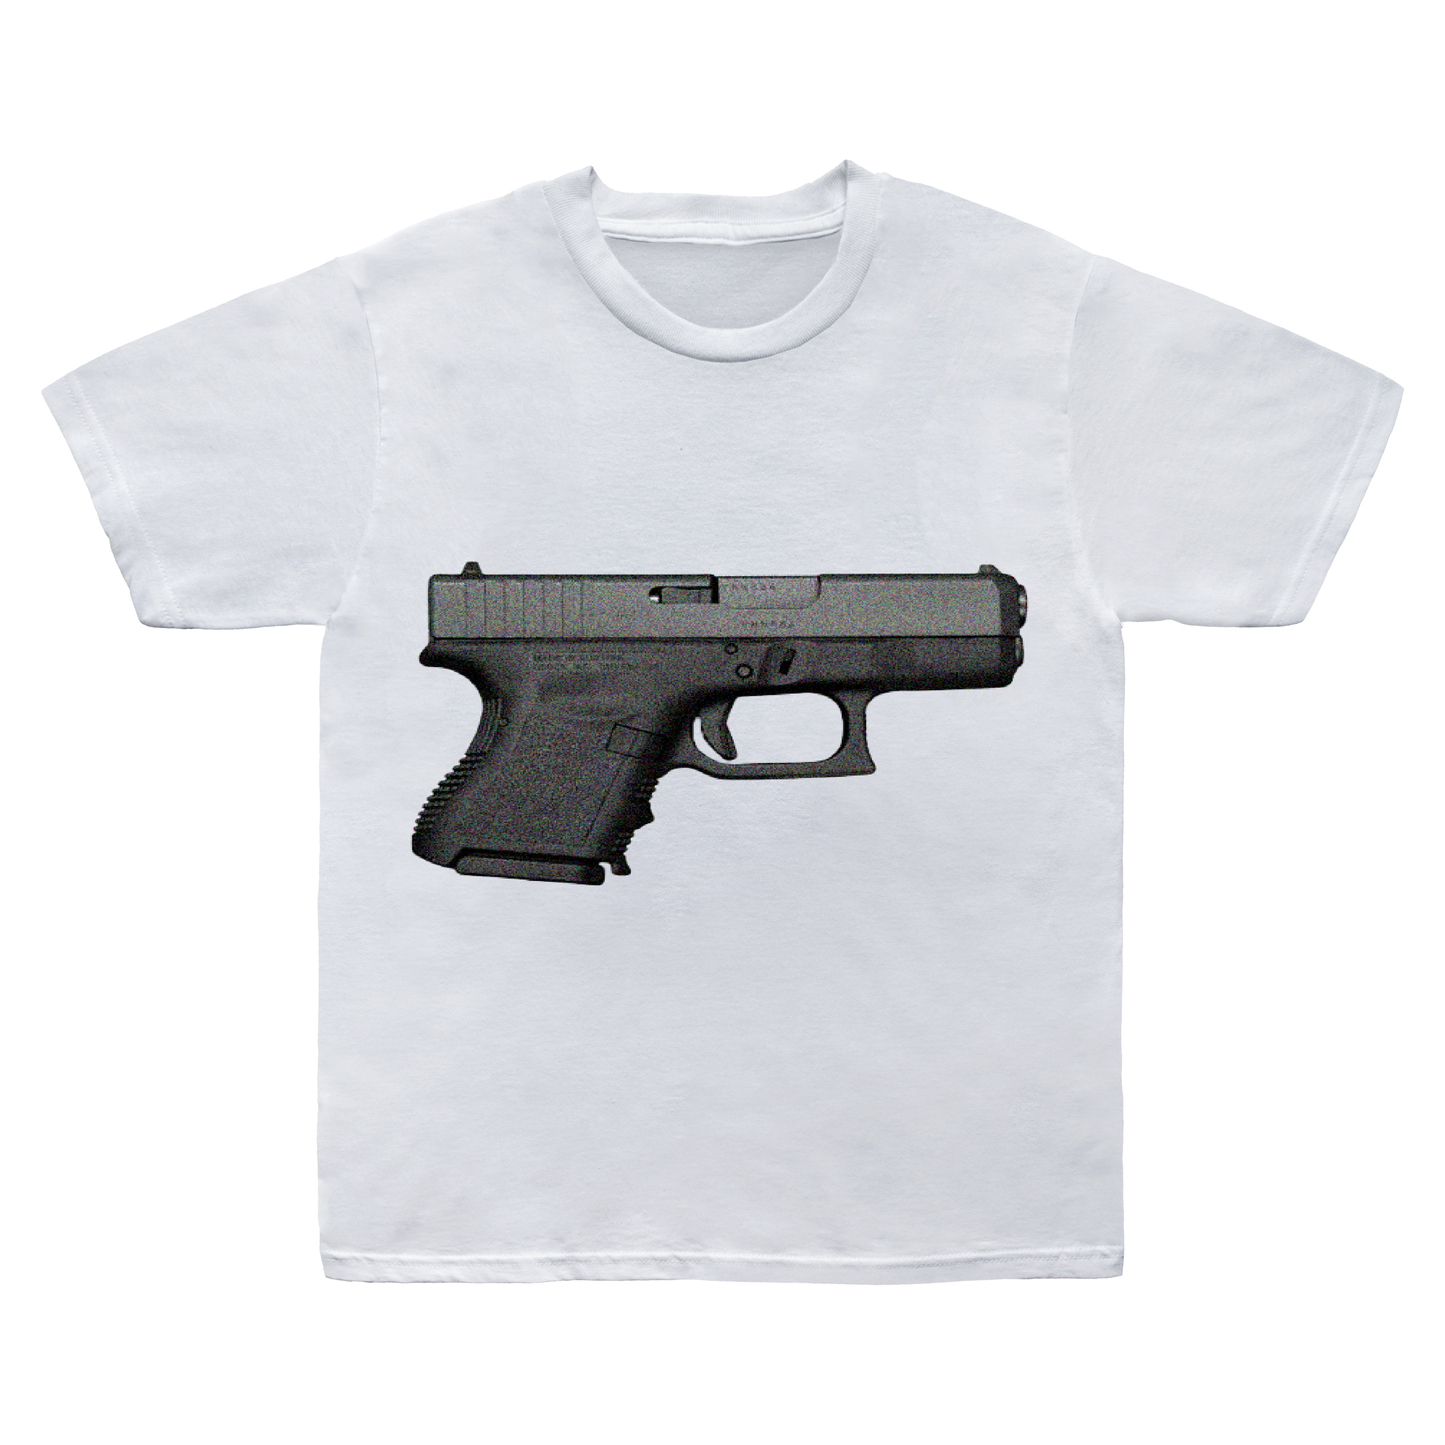 "Hand Gun" T-Shirt.